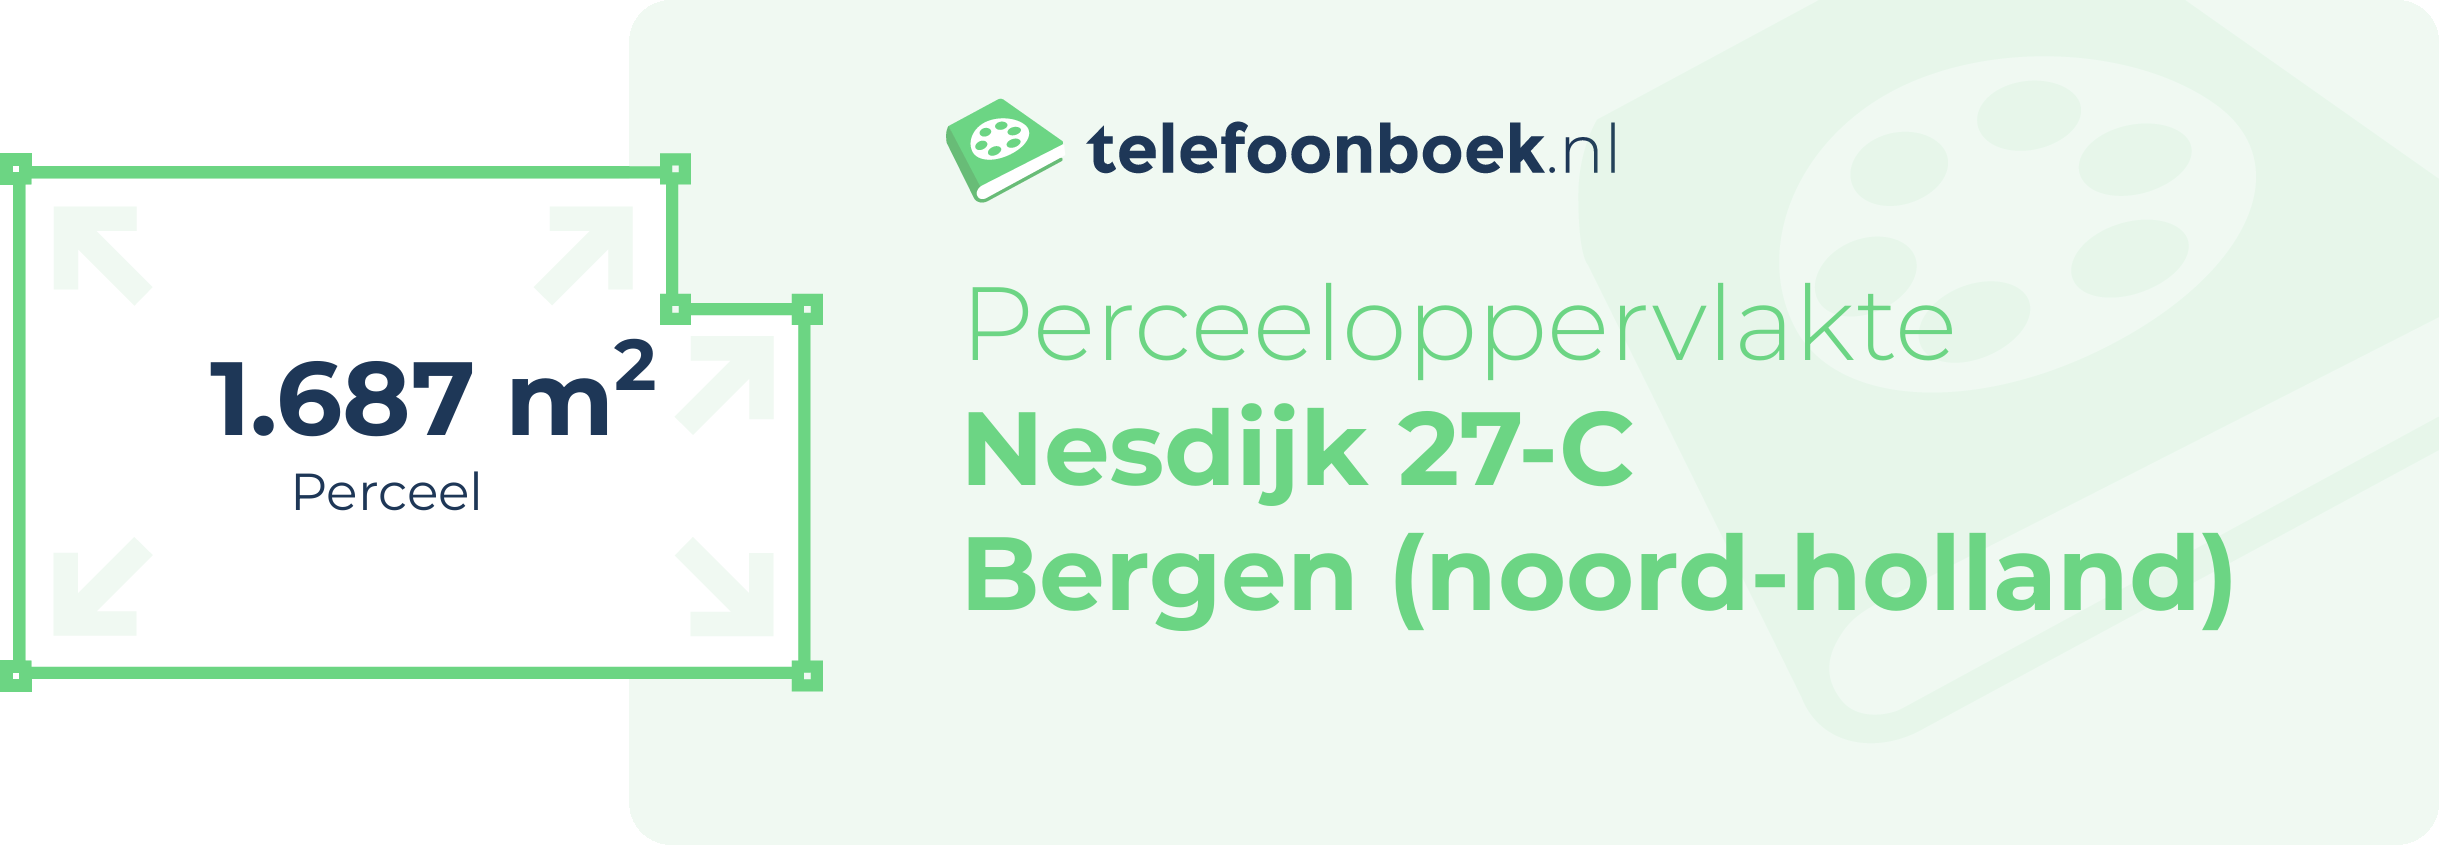 Perceeloppervlakte Nesdijk 27-C Bergen (Noord-Holland)